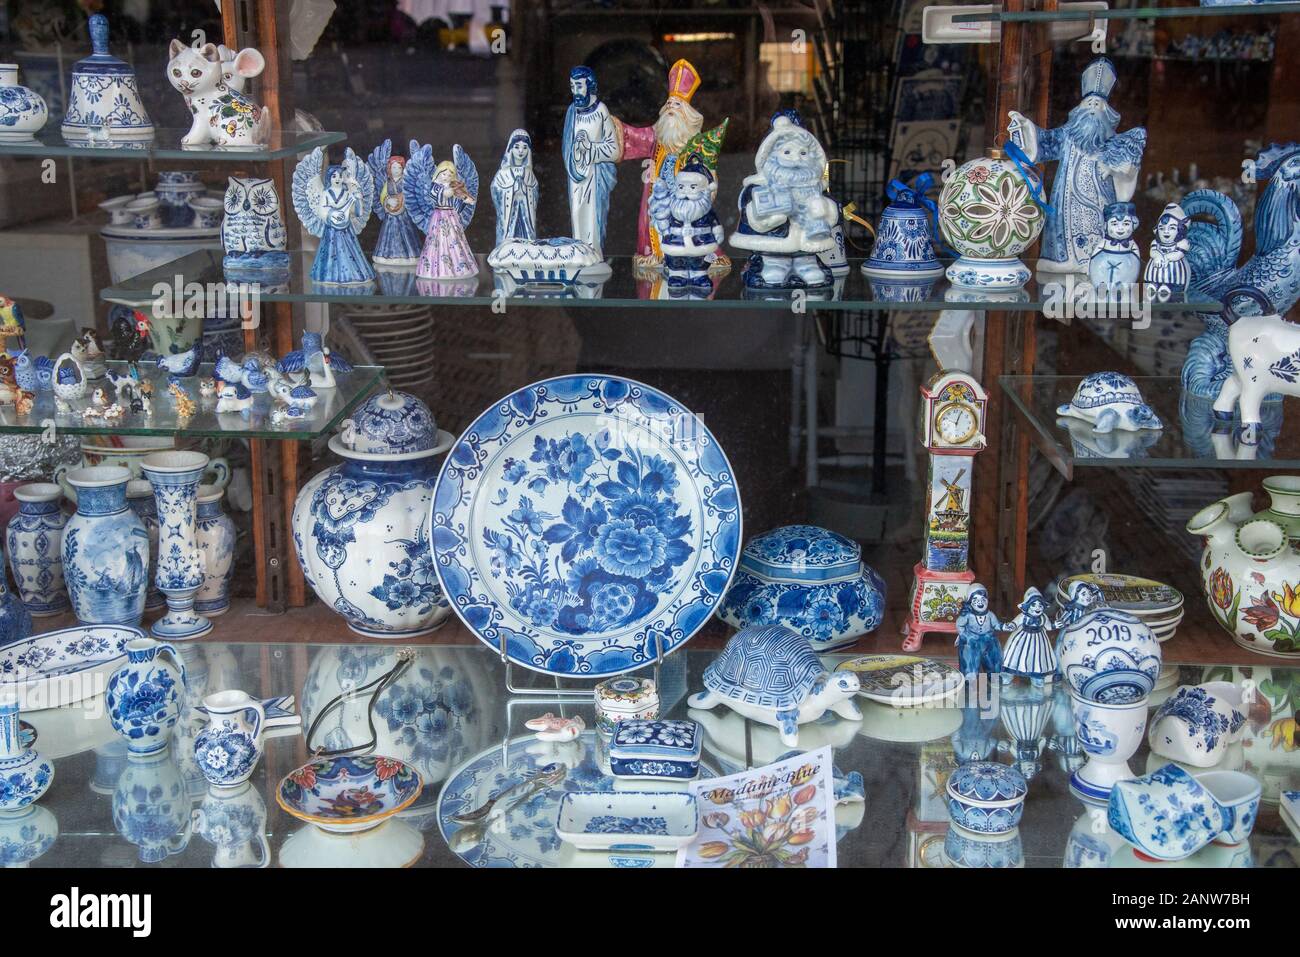 Delft blue souvenirs in shop in Delft Stock Photo